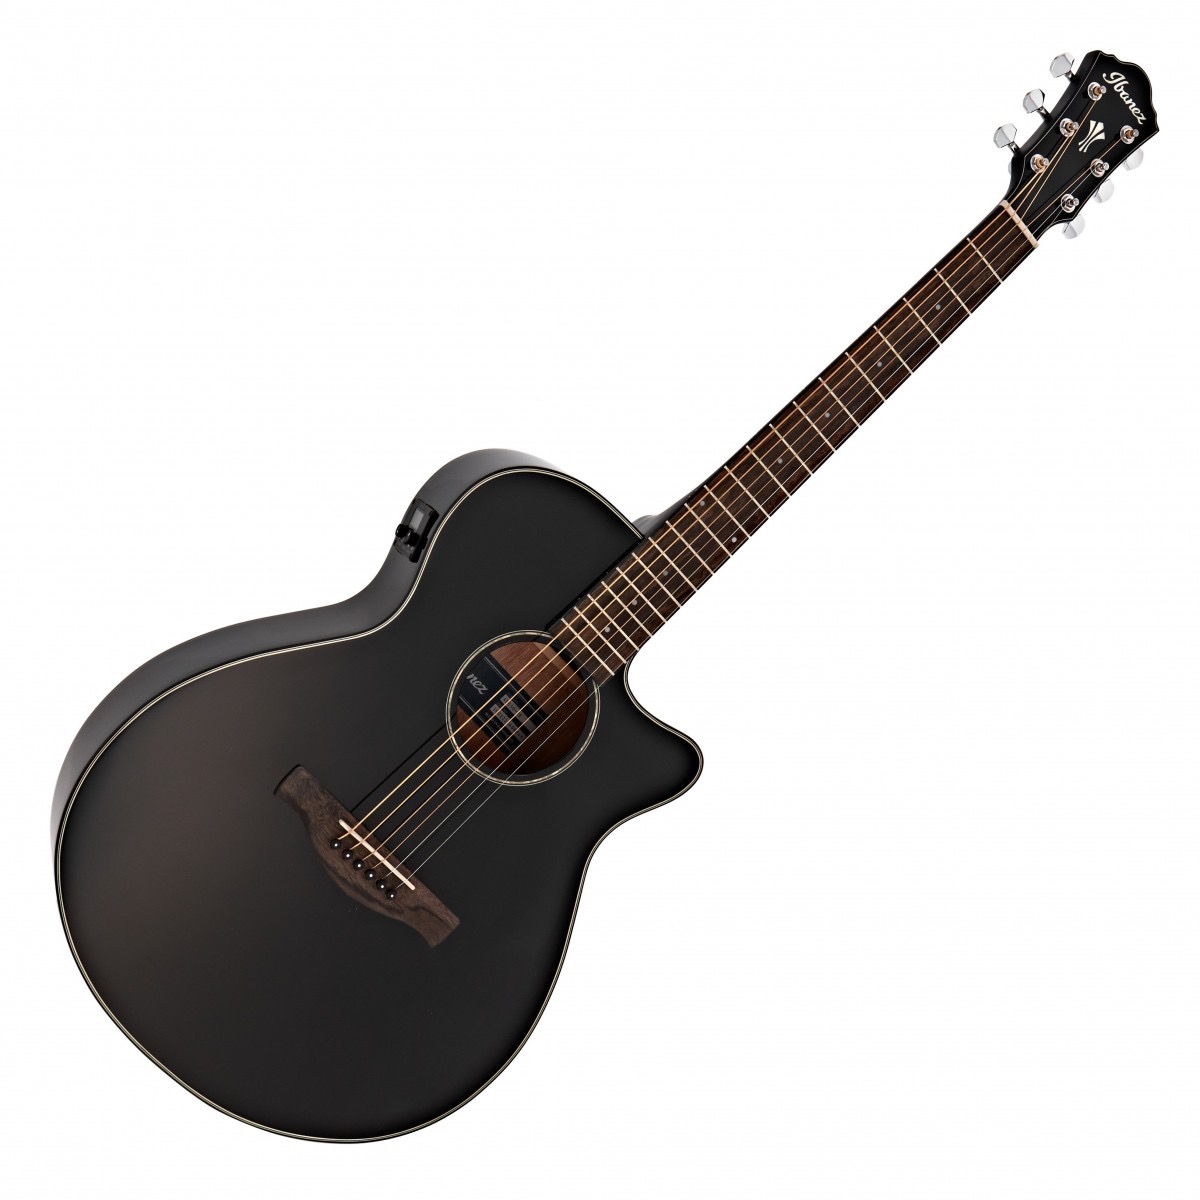 Ibanez aeg50 bk Western gitaar met element